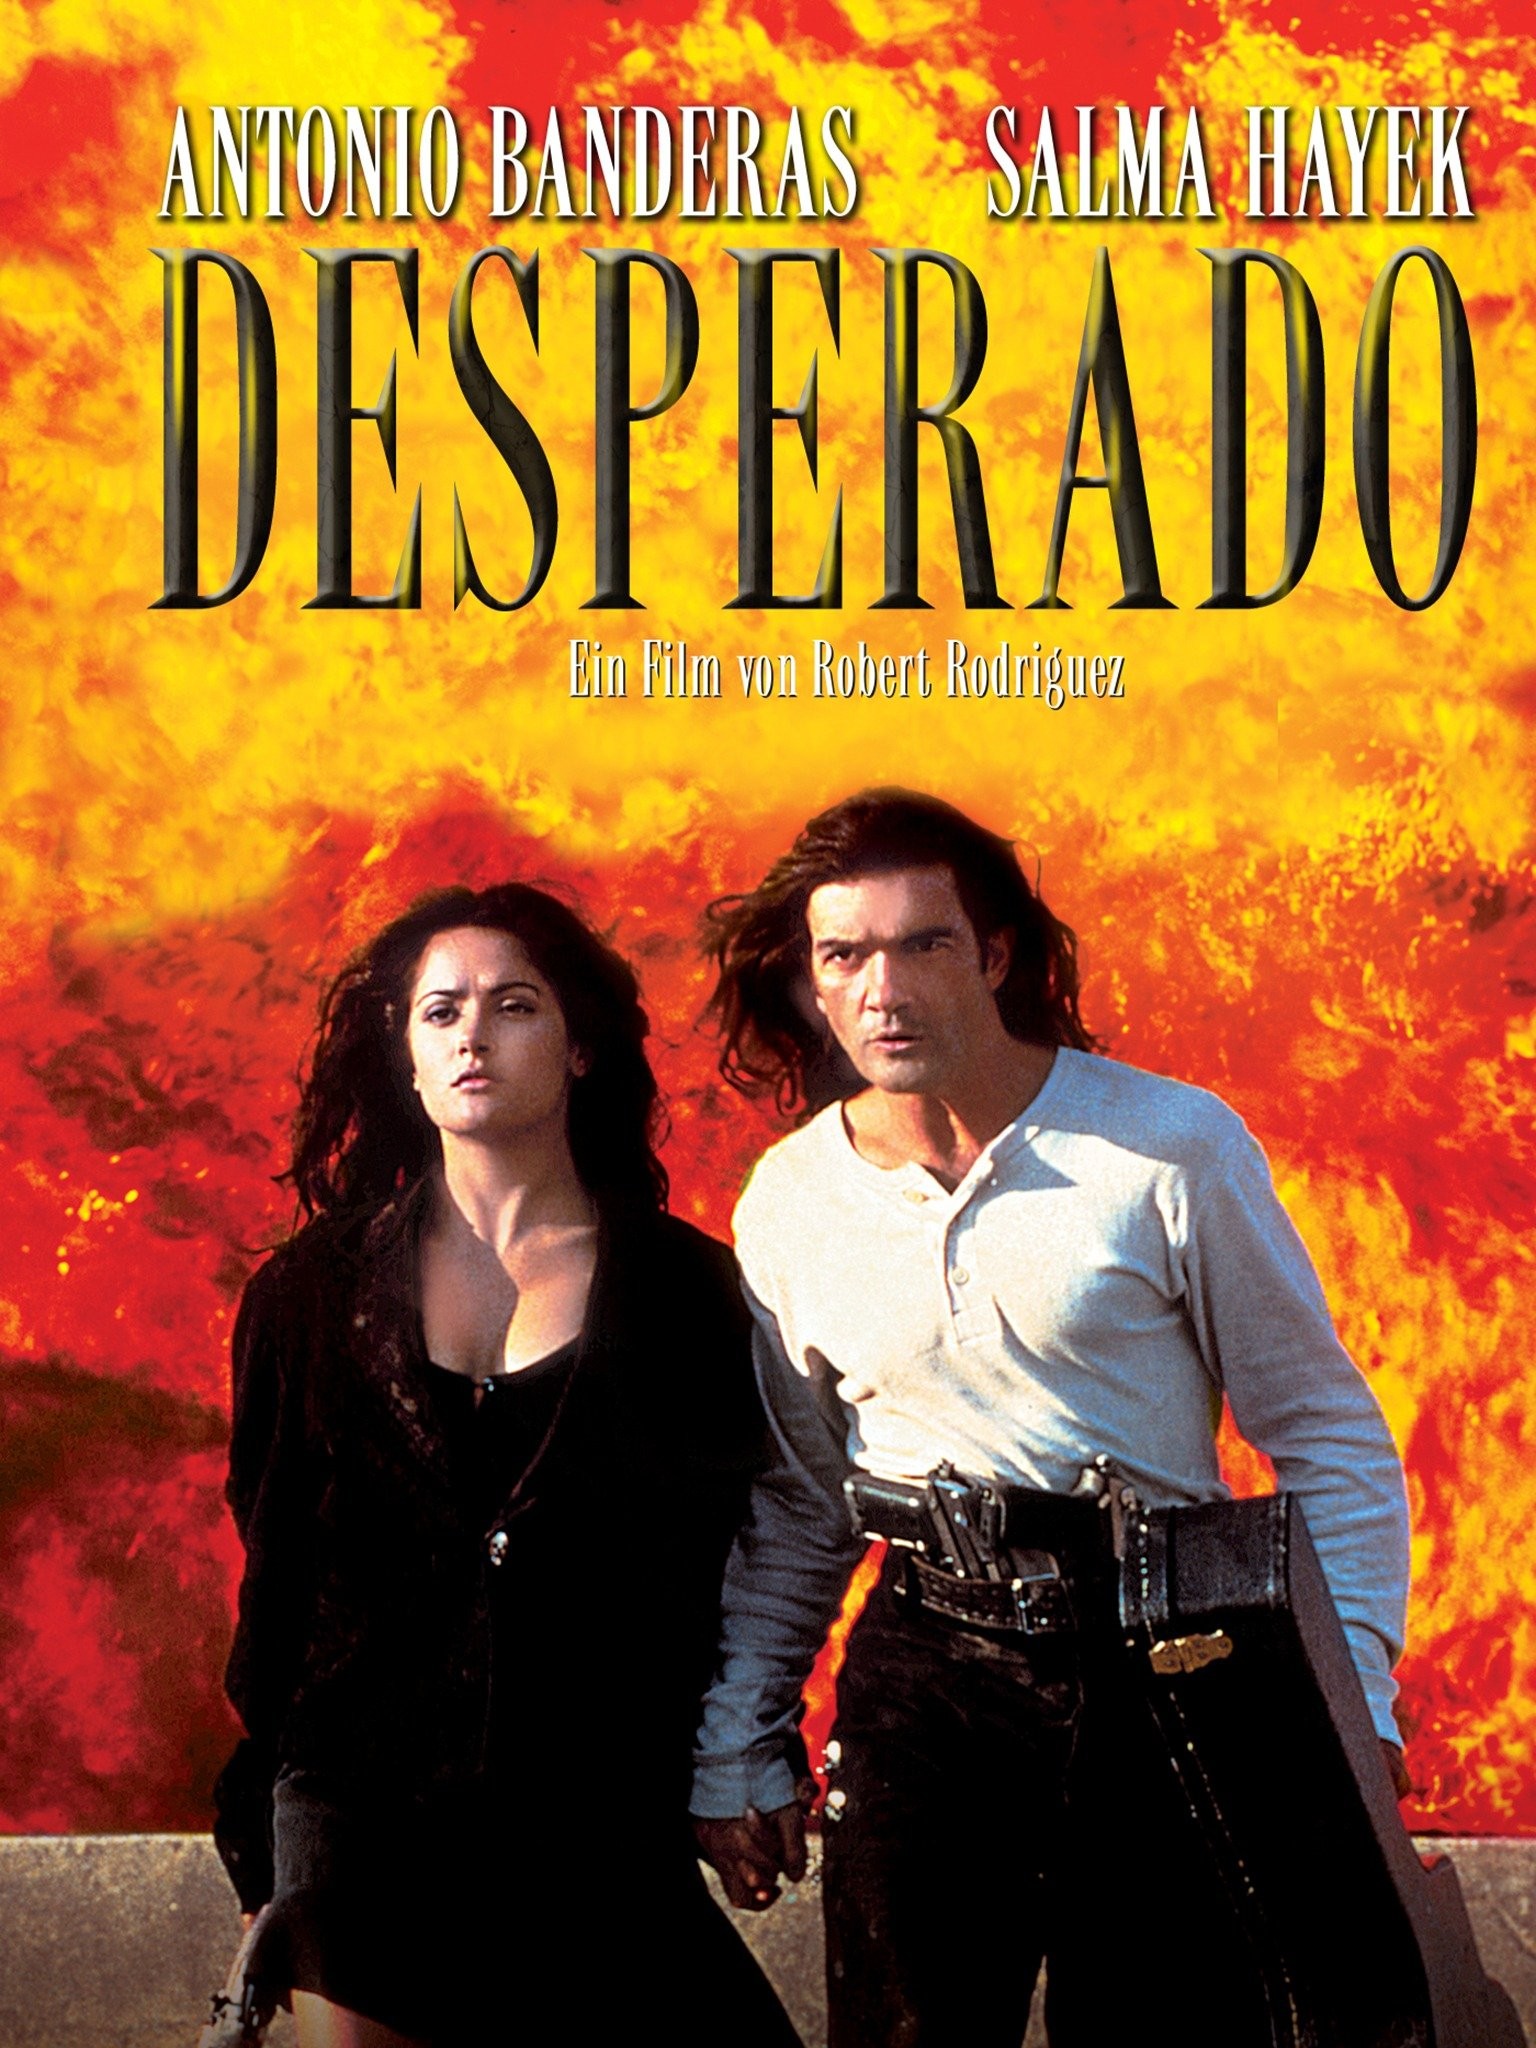 Antonio Banderas - Desperado